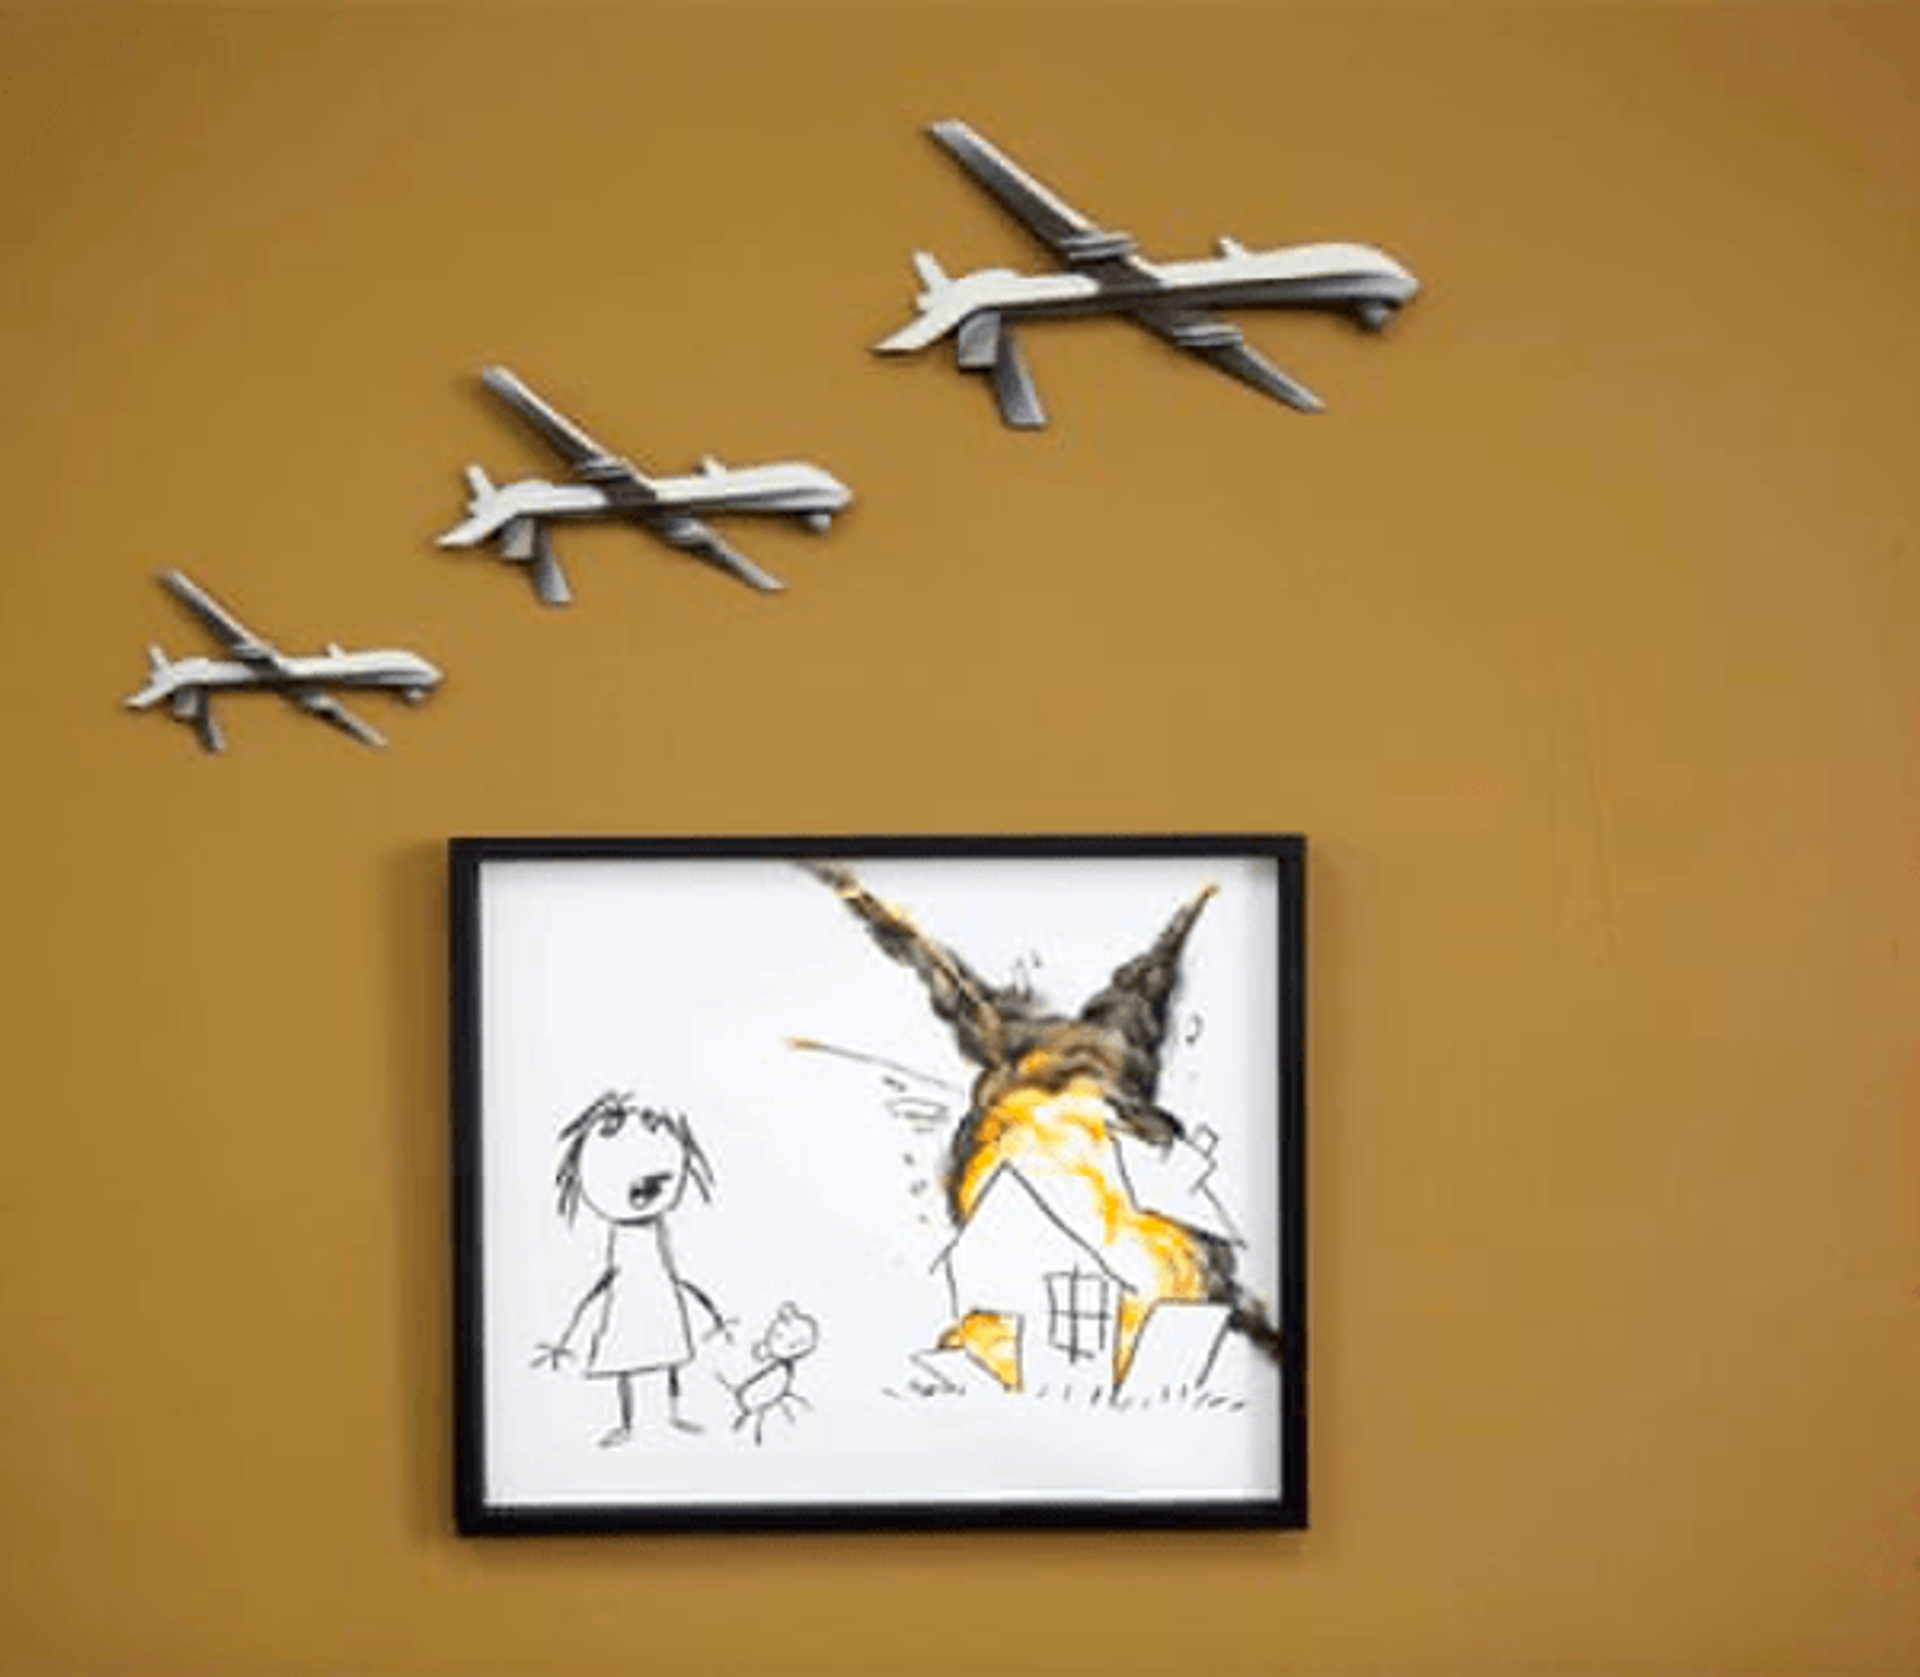 Civilian Drone Strike by Banksy